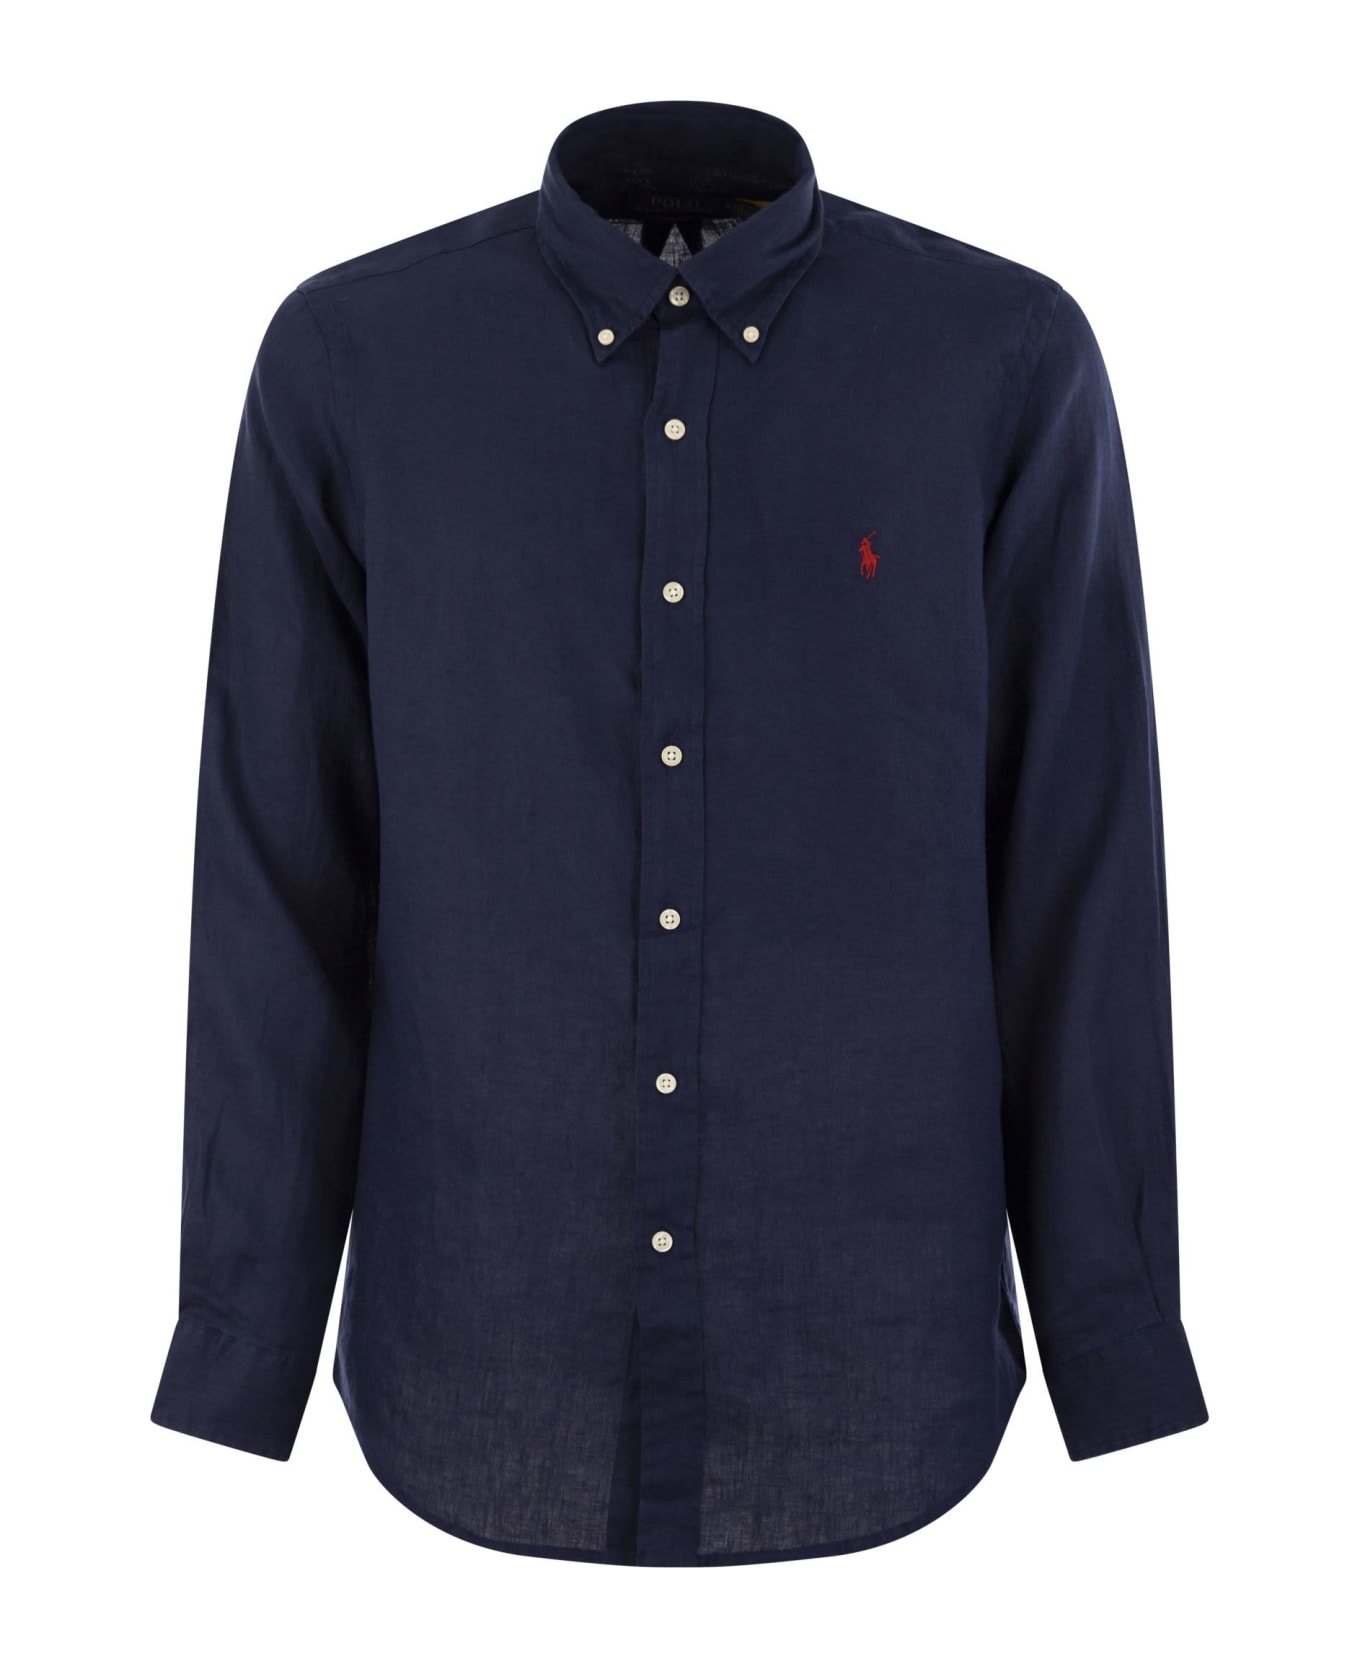 Polo Ralph Lauren Classic Long Sleeve Shirt - Navy Blue シャツ